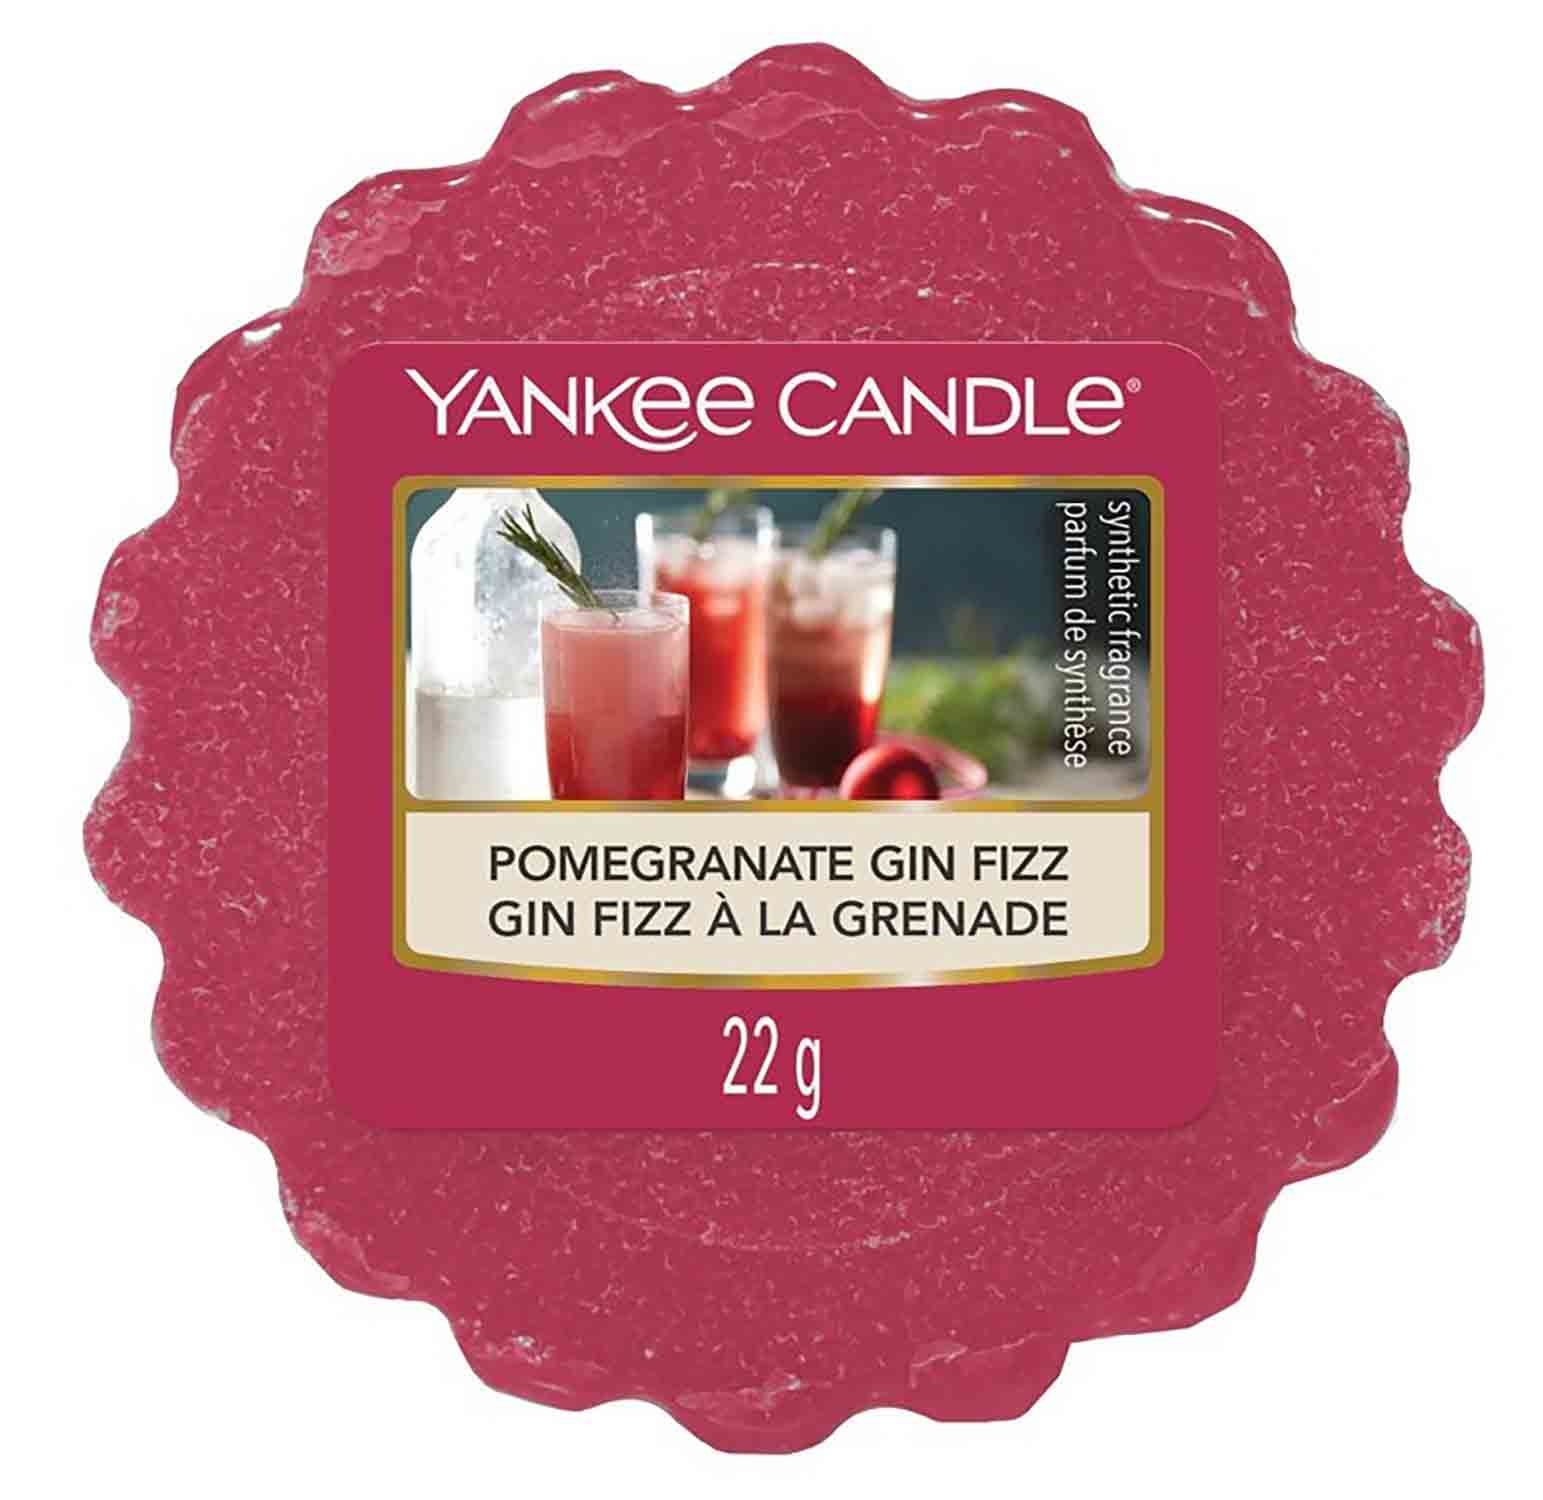 Yankee Candle Pomegranate Gin Fizz 22g vonný vosk